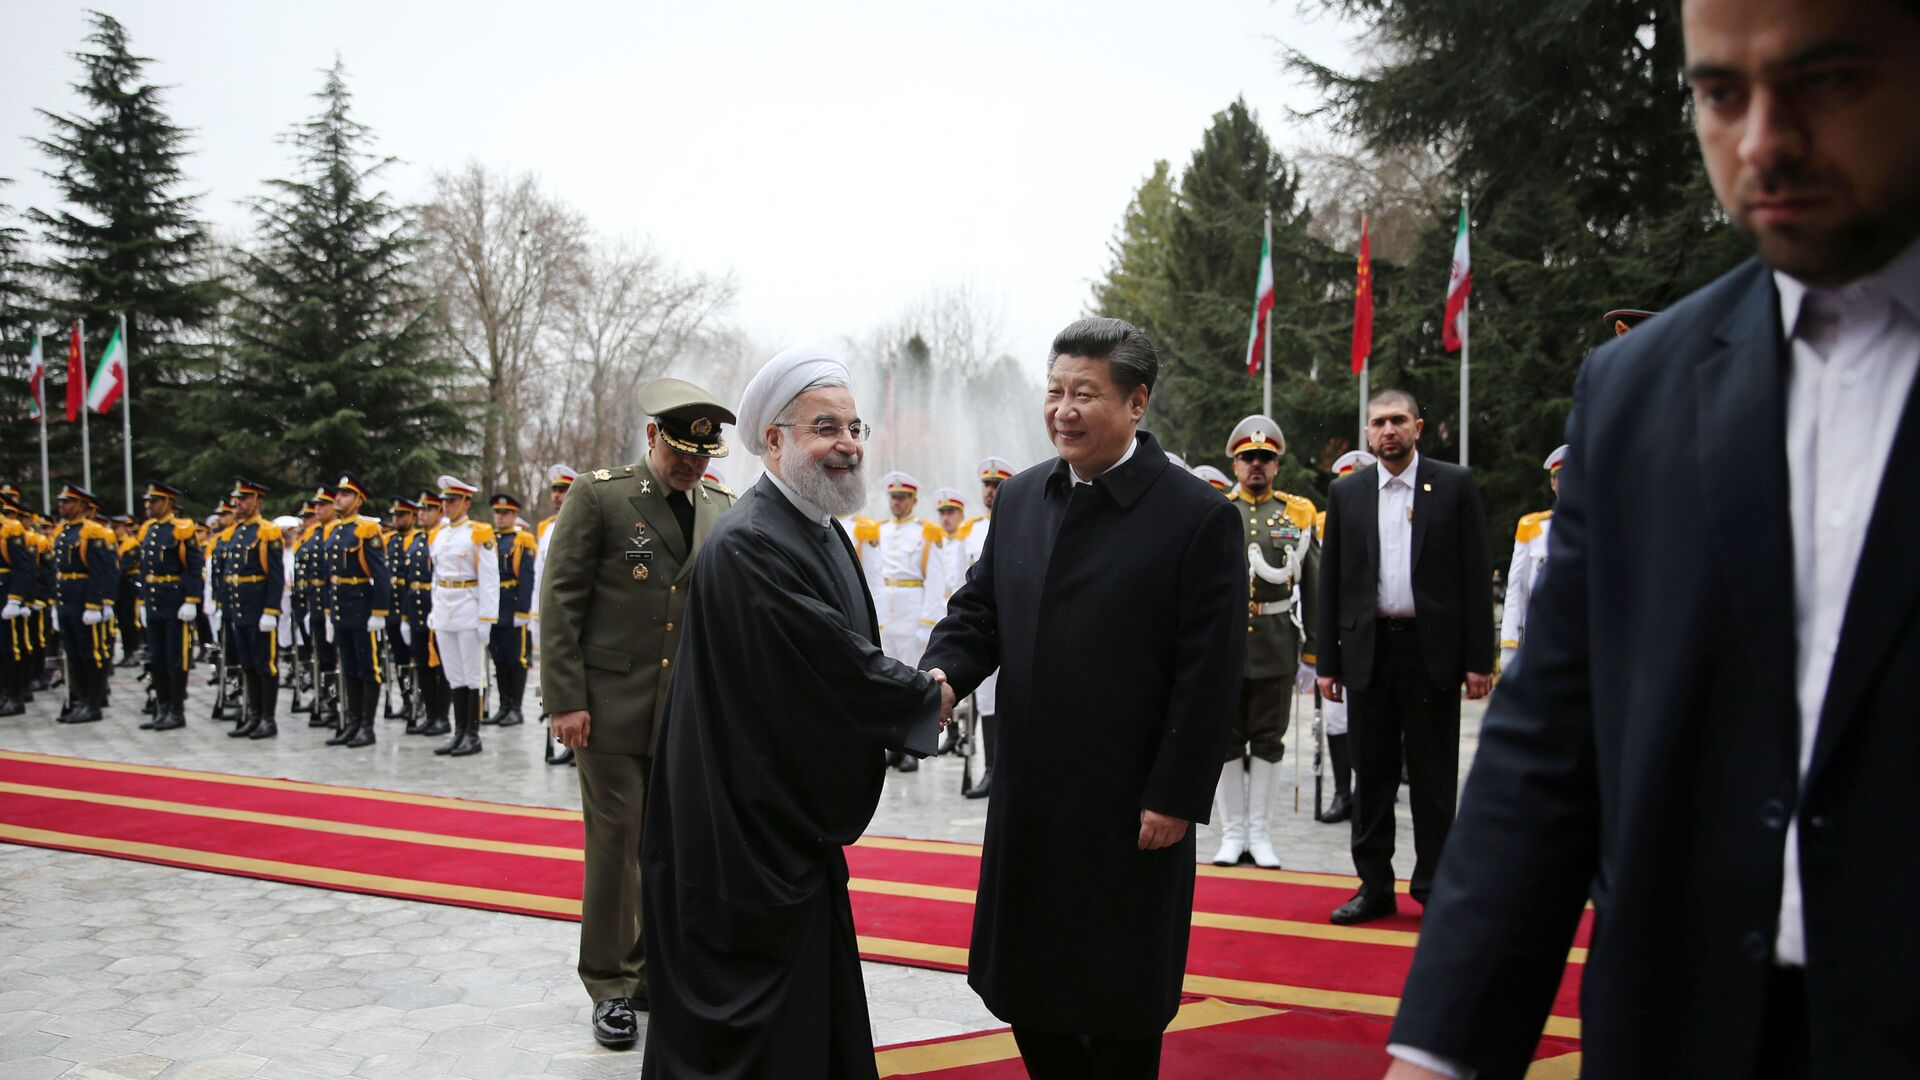 Састанак иранског председника Хасана Роханија и кинеског председника Си Ђинпинга - Sputnik Србија, 1920, 29.03.2021